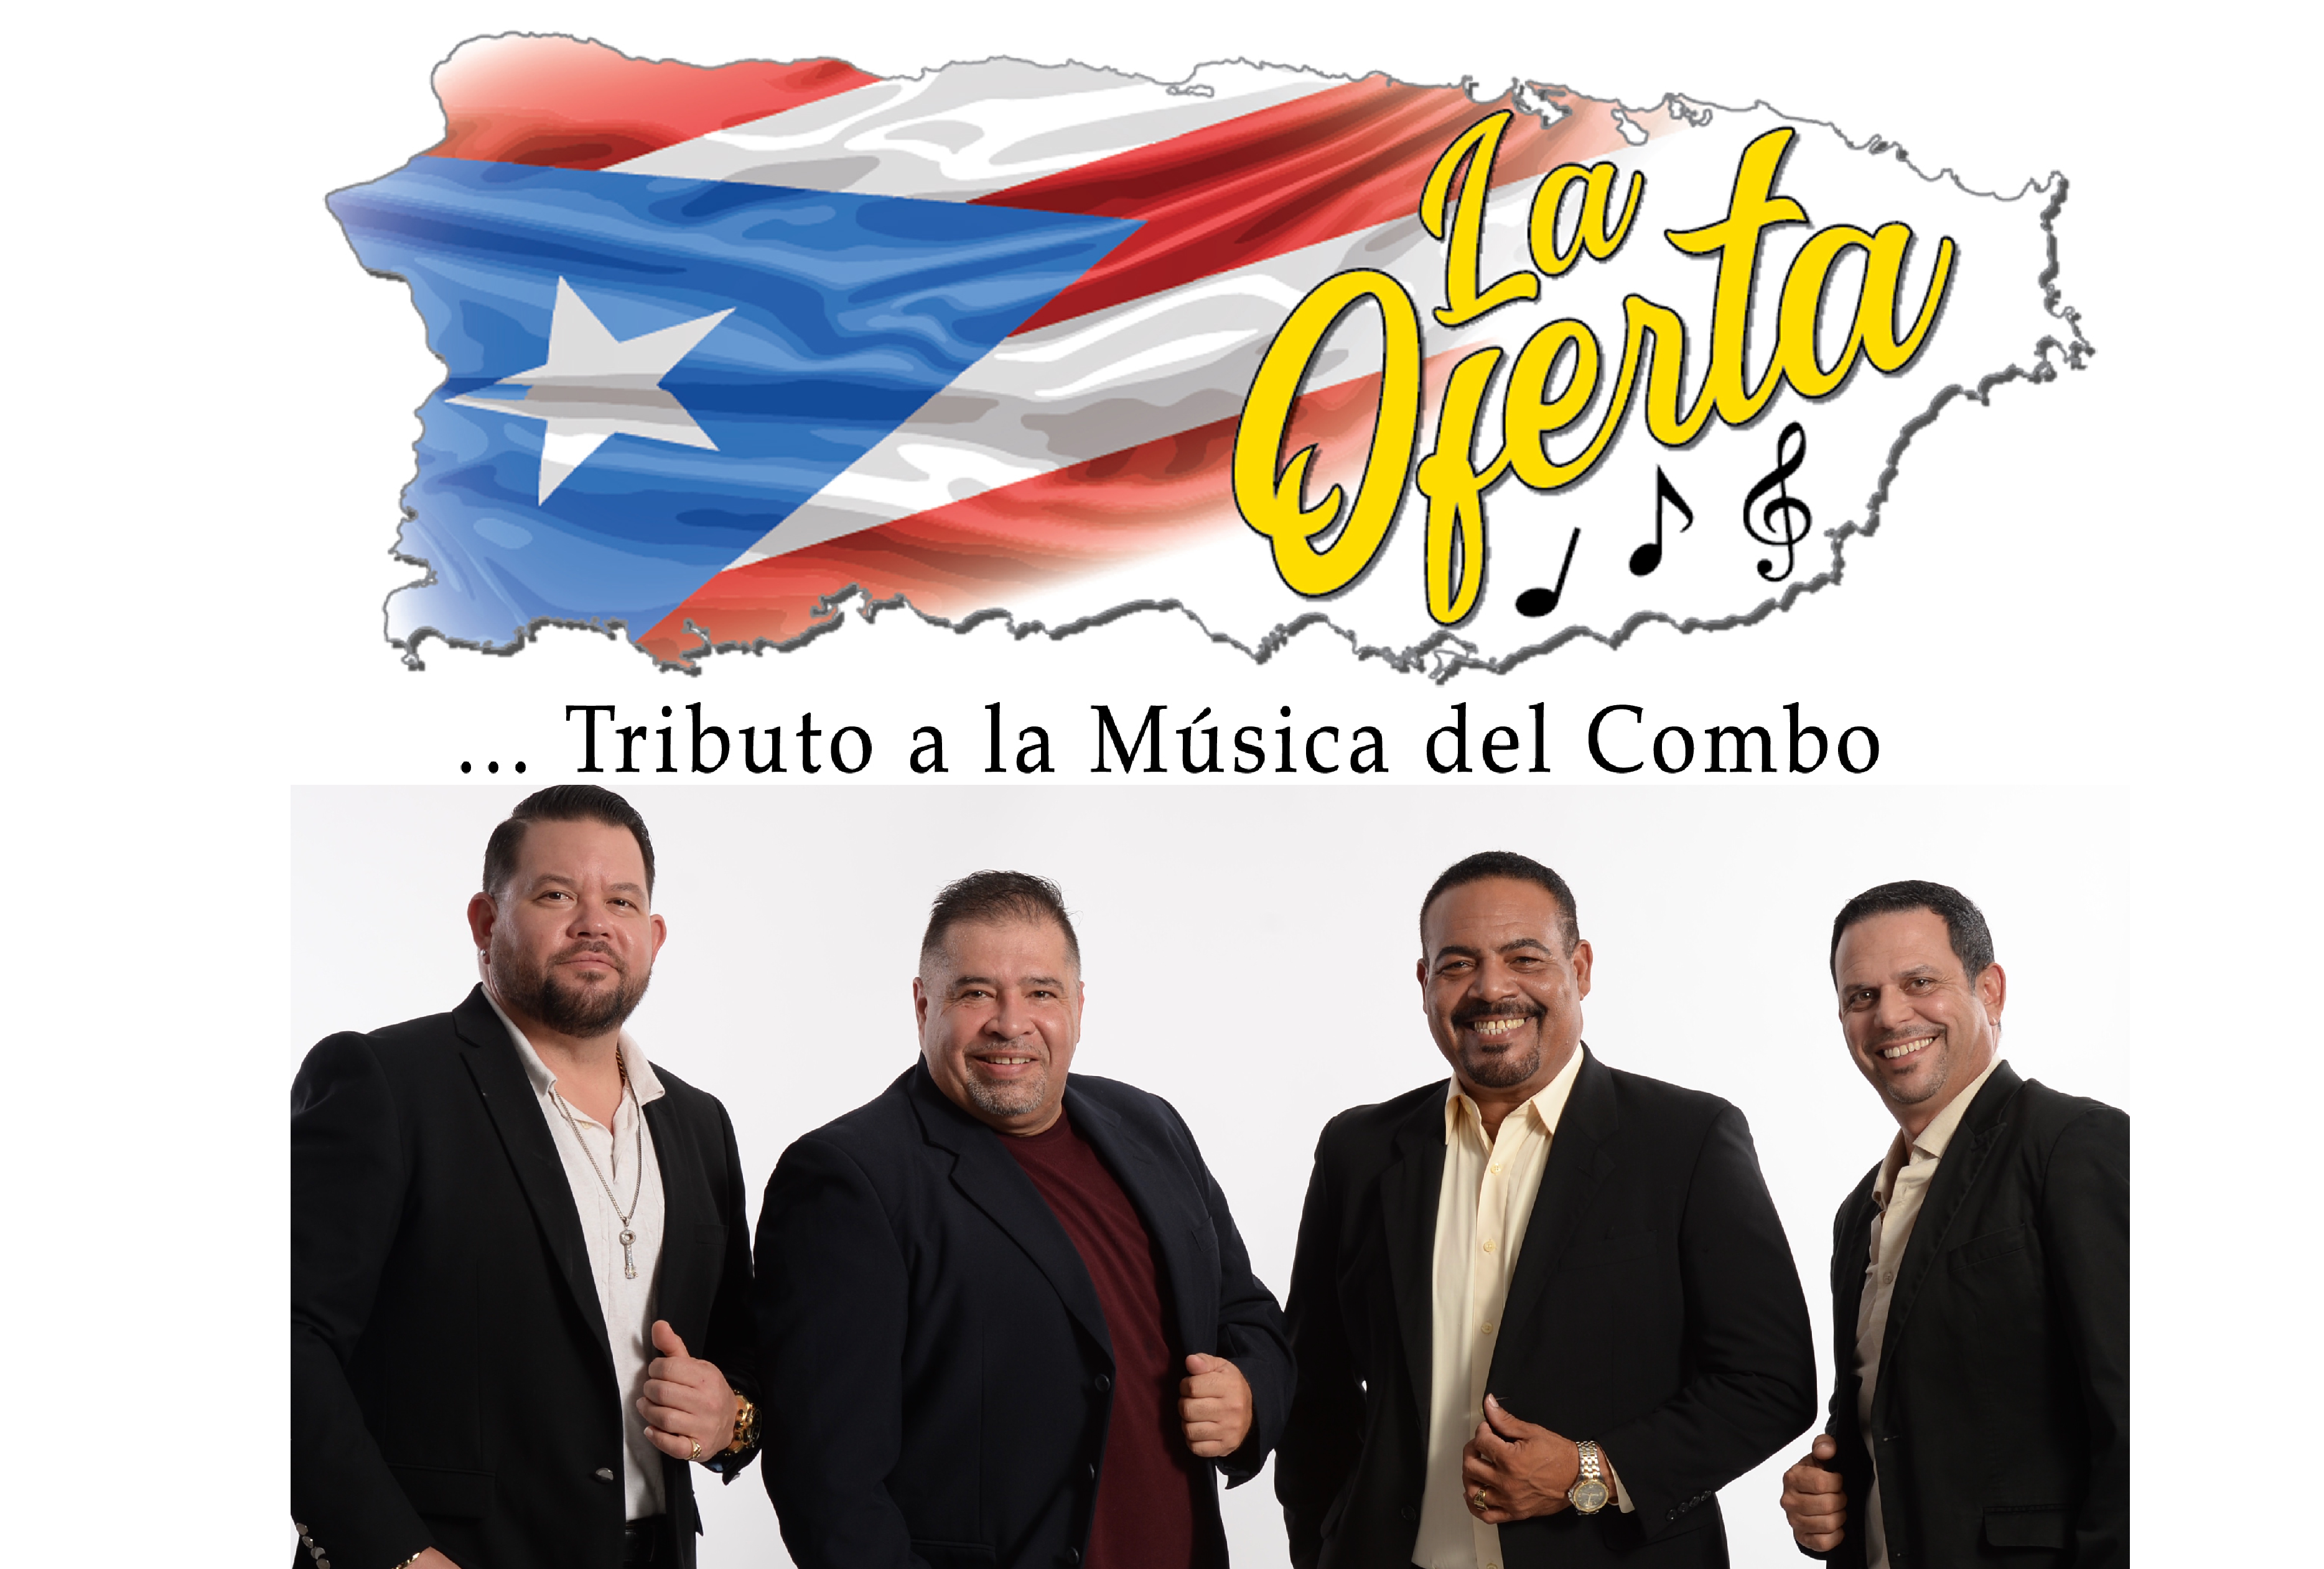 Orquesta La Oferta lanza “Un Besito” su primer número original